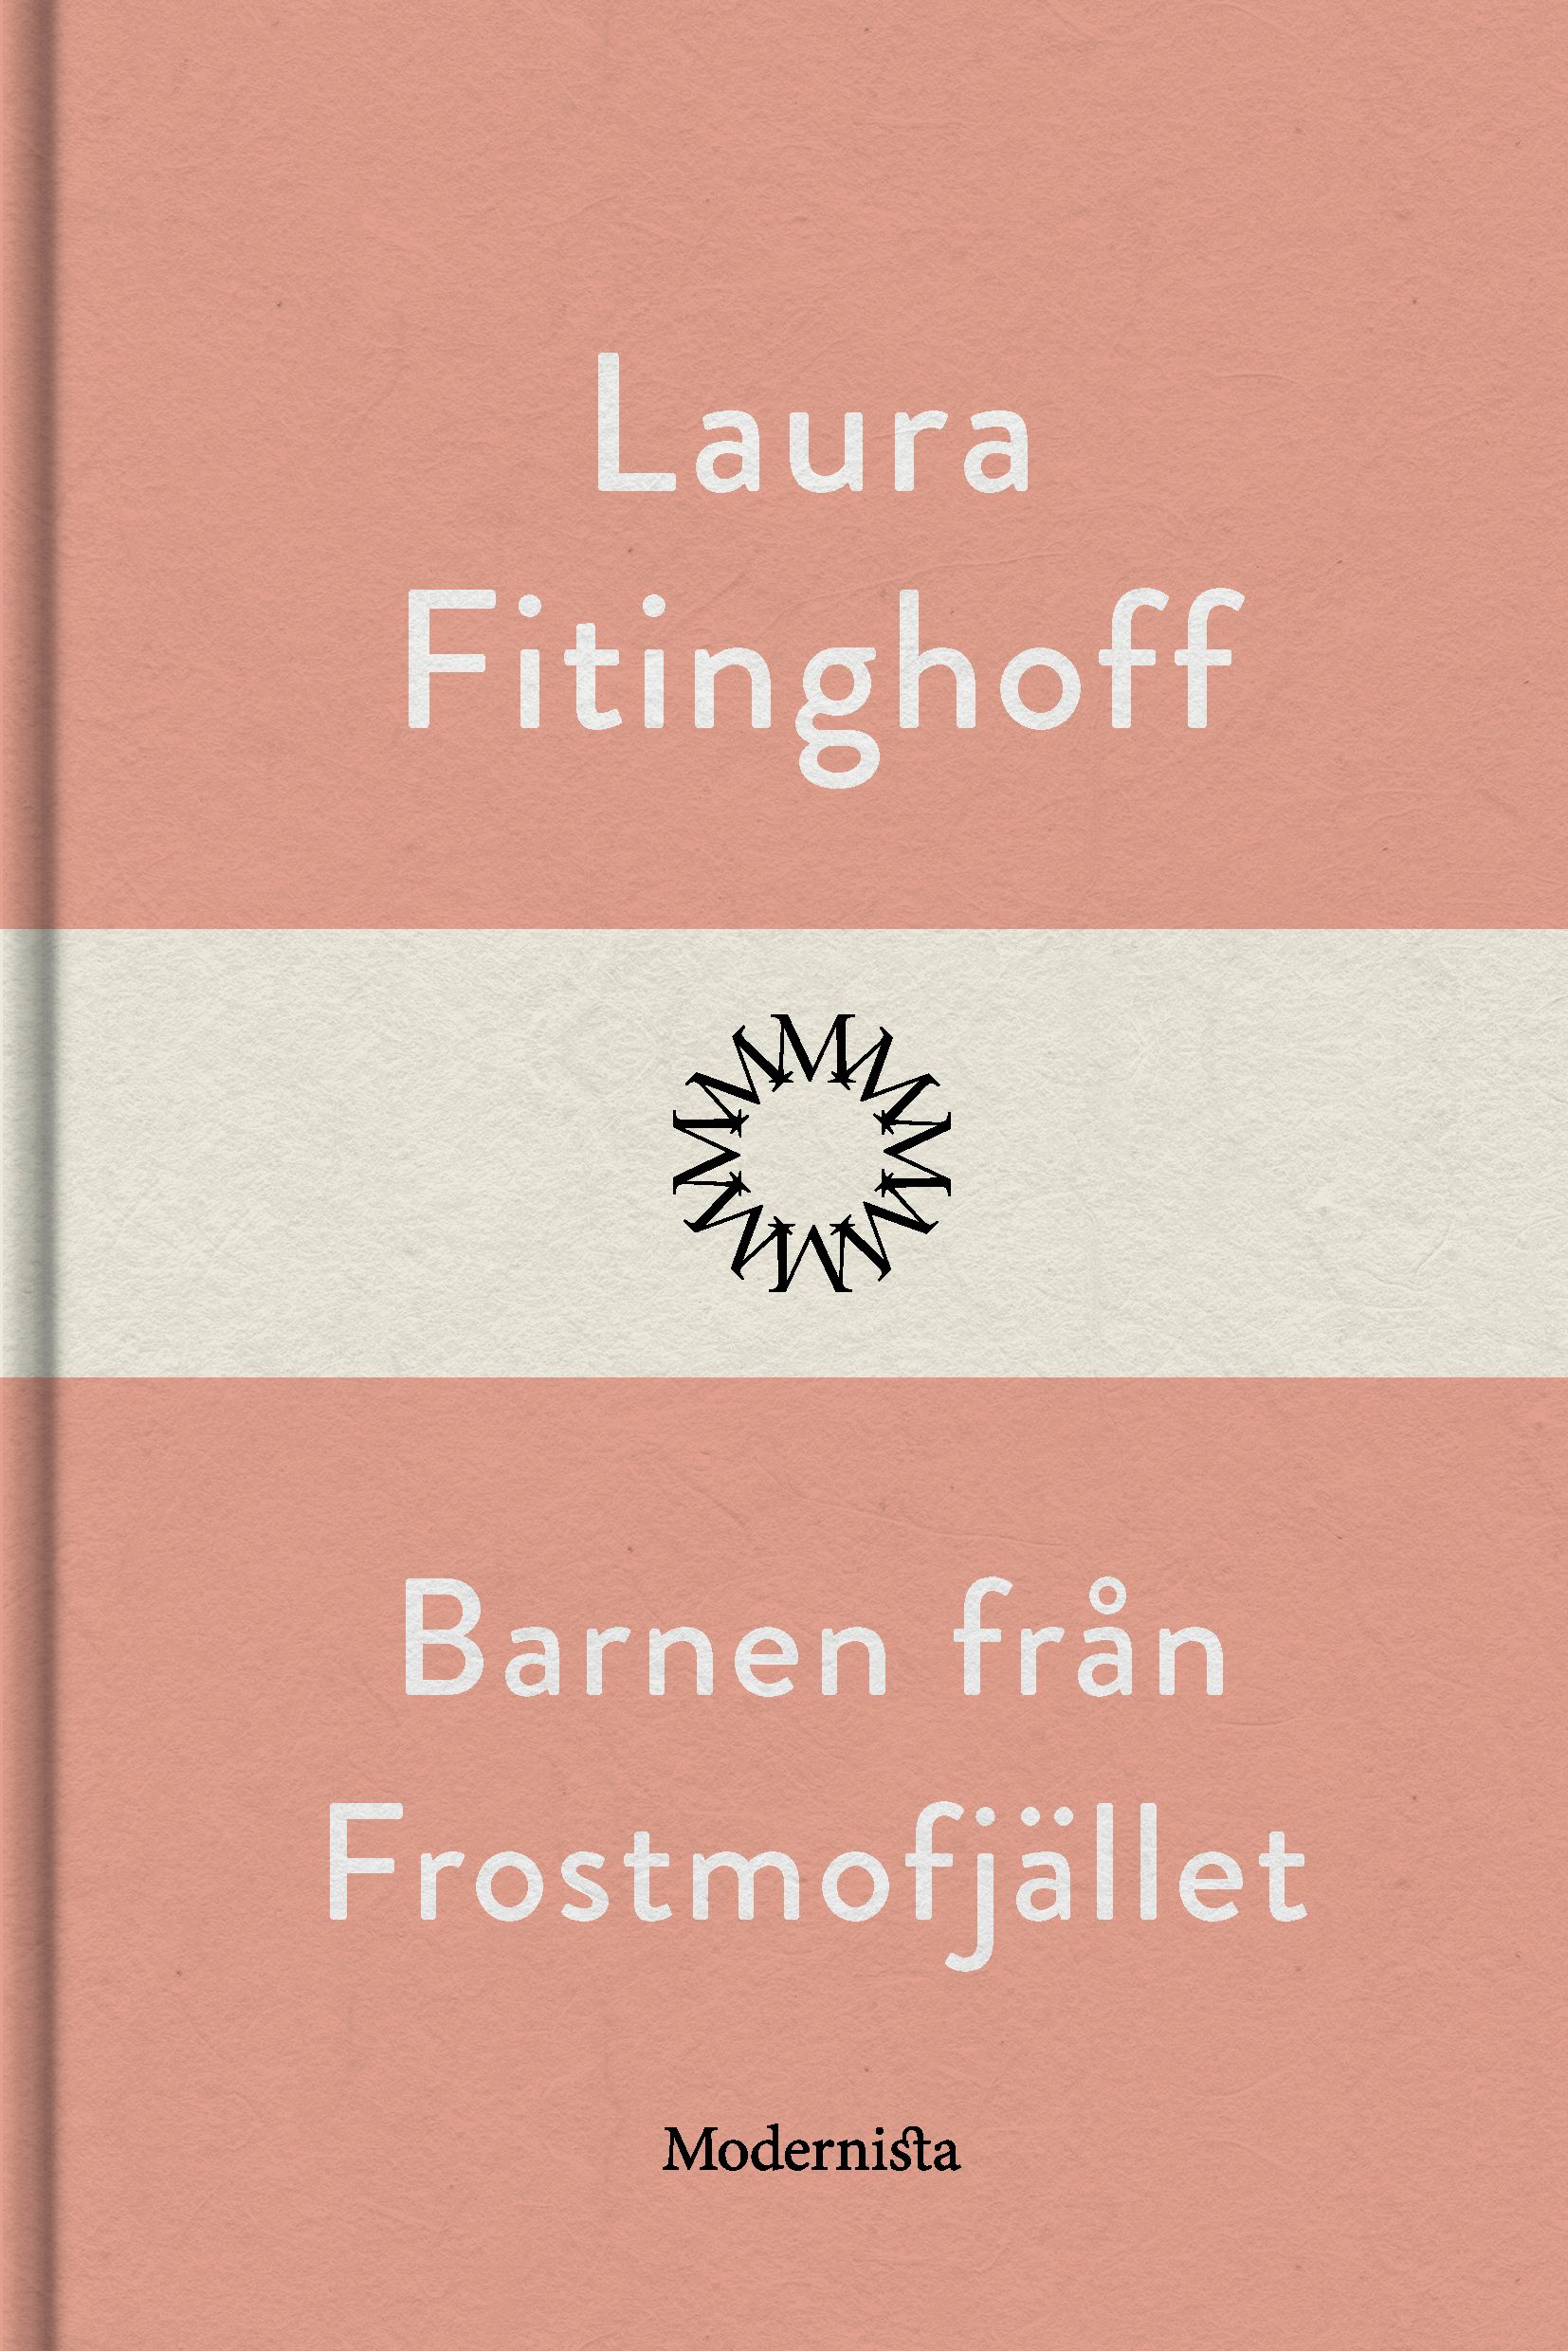 Barnen från Frostmofjället, eBook by Laura Fitinghoff